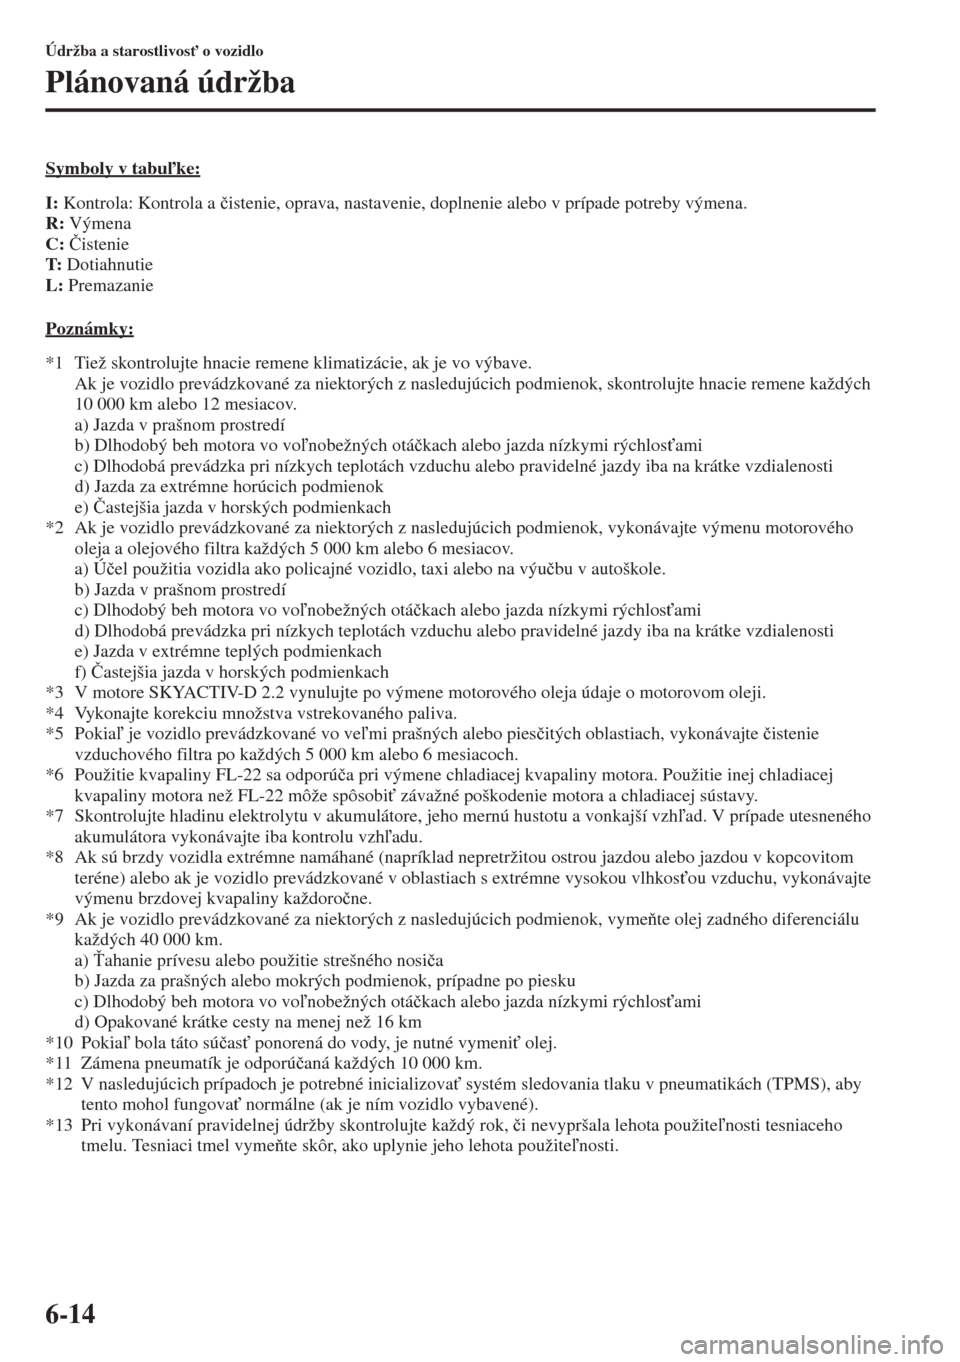 MAZDA MODEL CX-5 2015  Užívateľská príručka (in Slovak) 6-14
Údržba a starostlivos" o vozidlo
Plánovaná údržba
Symboly v tabuke:
I: Kontrola: Kontrola a �þistenie, oprava, nastavenie, doplnenie alebo v prípade potreby výmena.
R: Výmena
C: �ýi